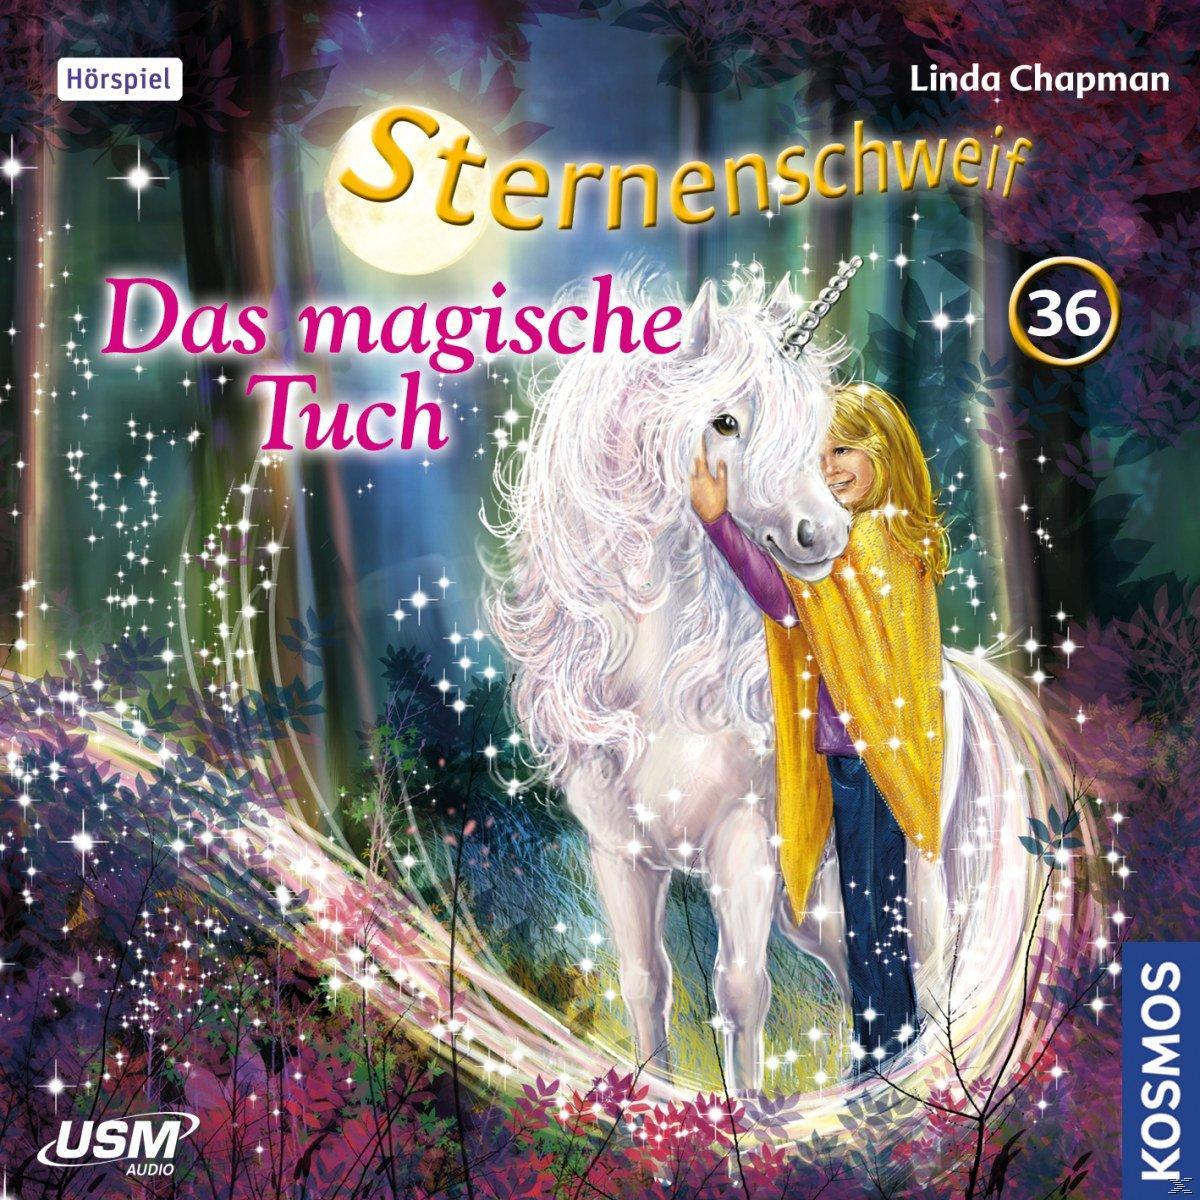 36 (CD) Das - Tuch Magische Sternenschweif - : Folge